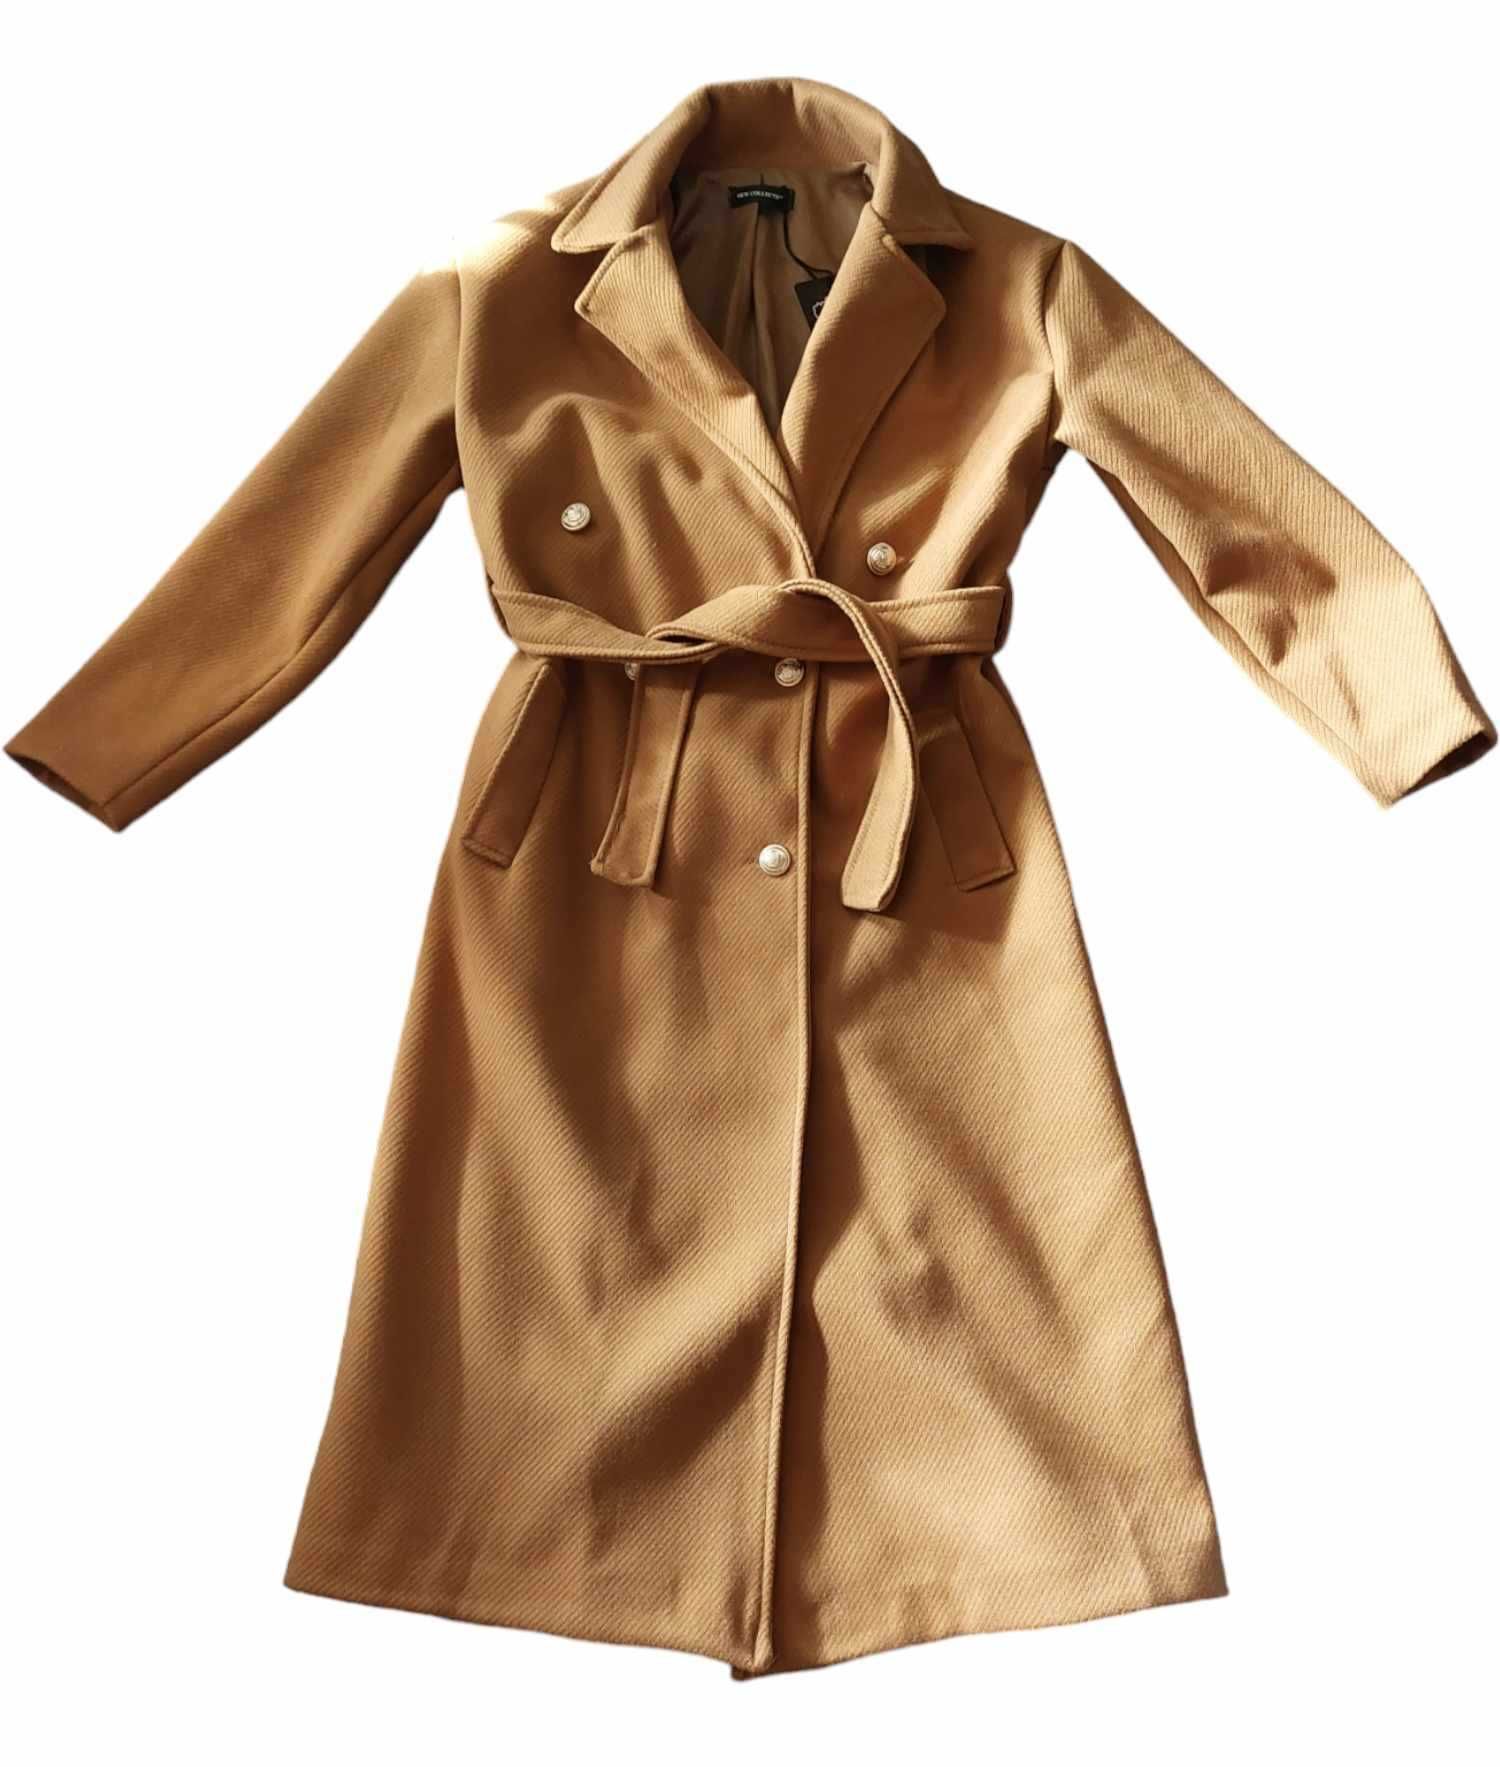 nowy klasyczny brązowy płaszcz damski przejściowy wiosenny S 36 +KOMIN